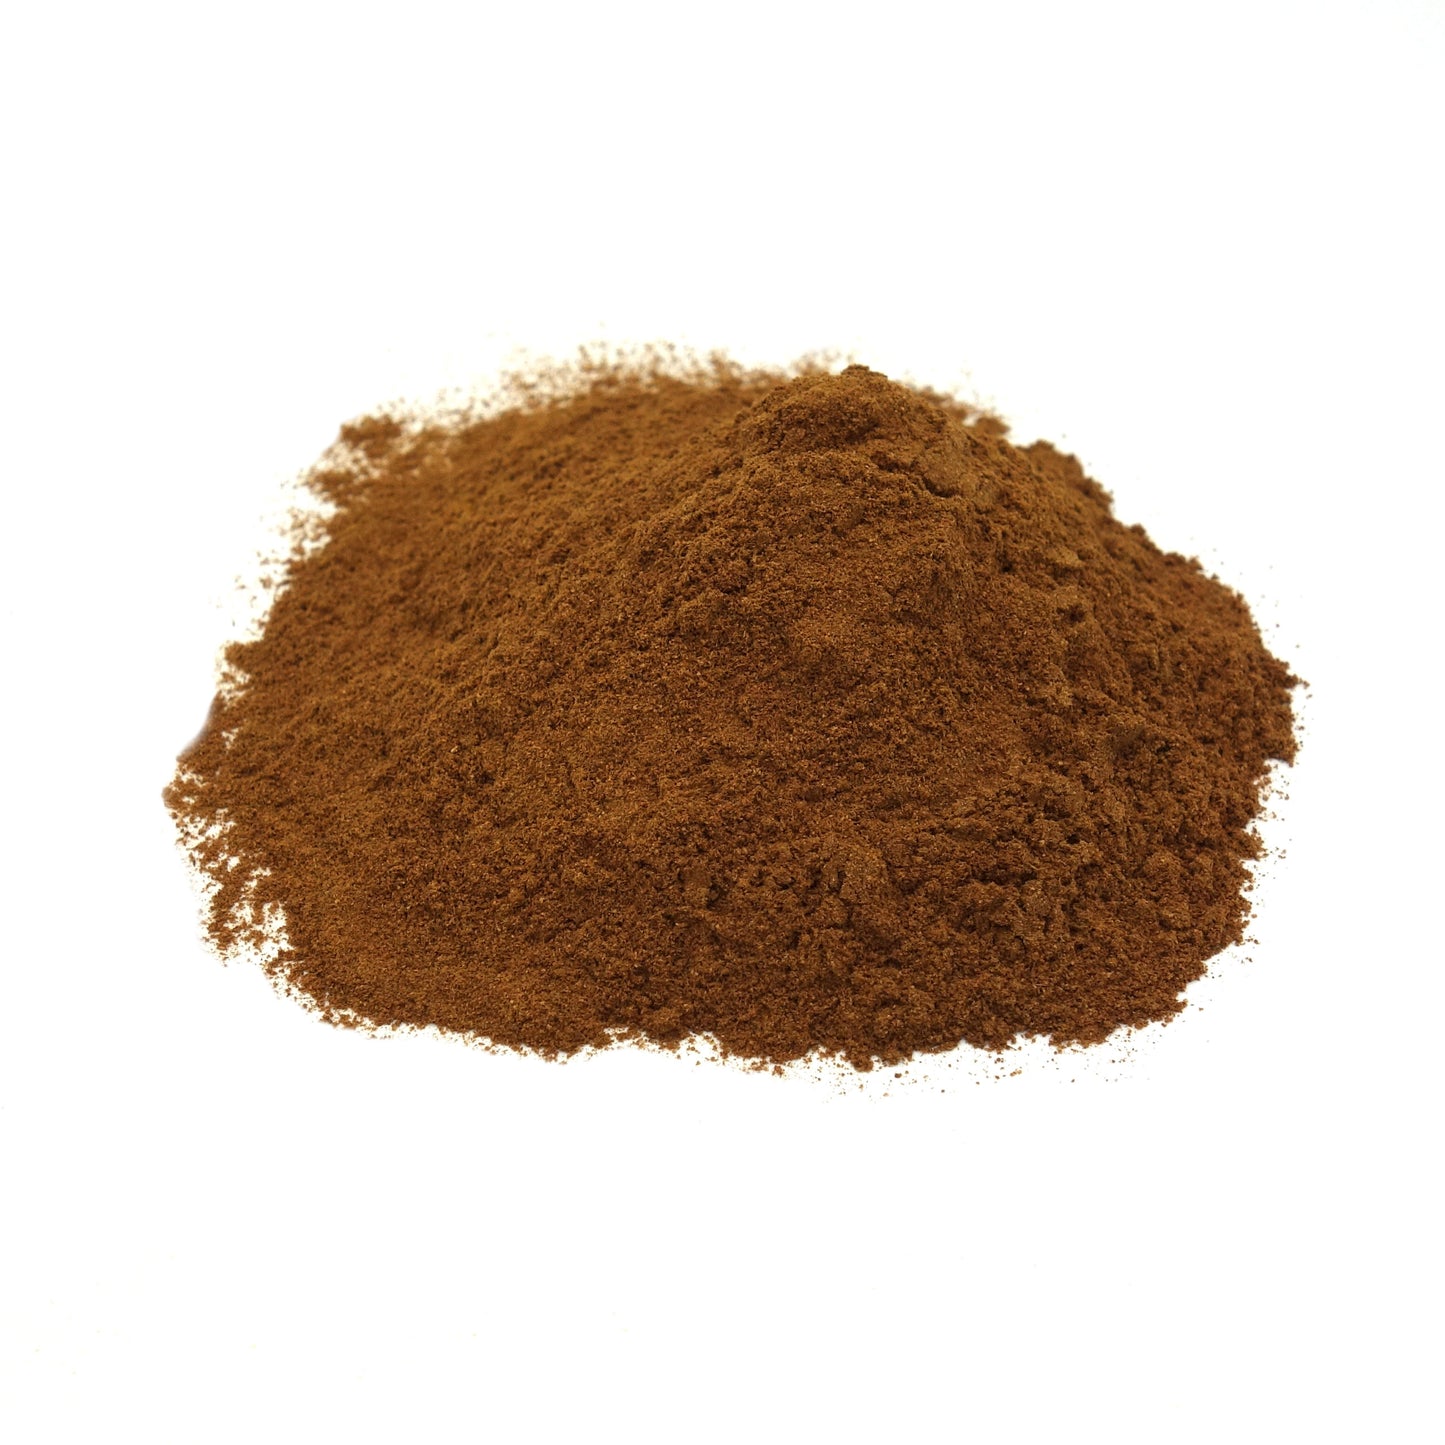 Cinnamon Ceylon powder 1oz